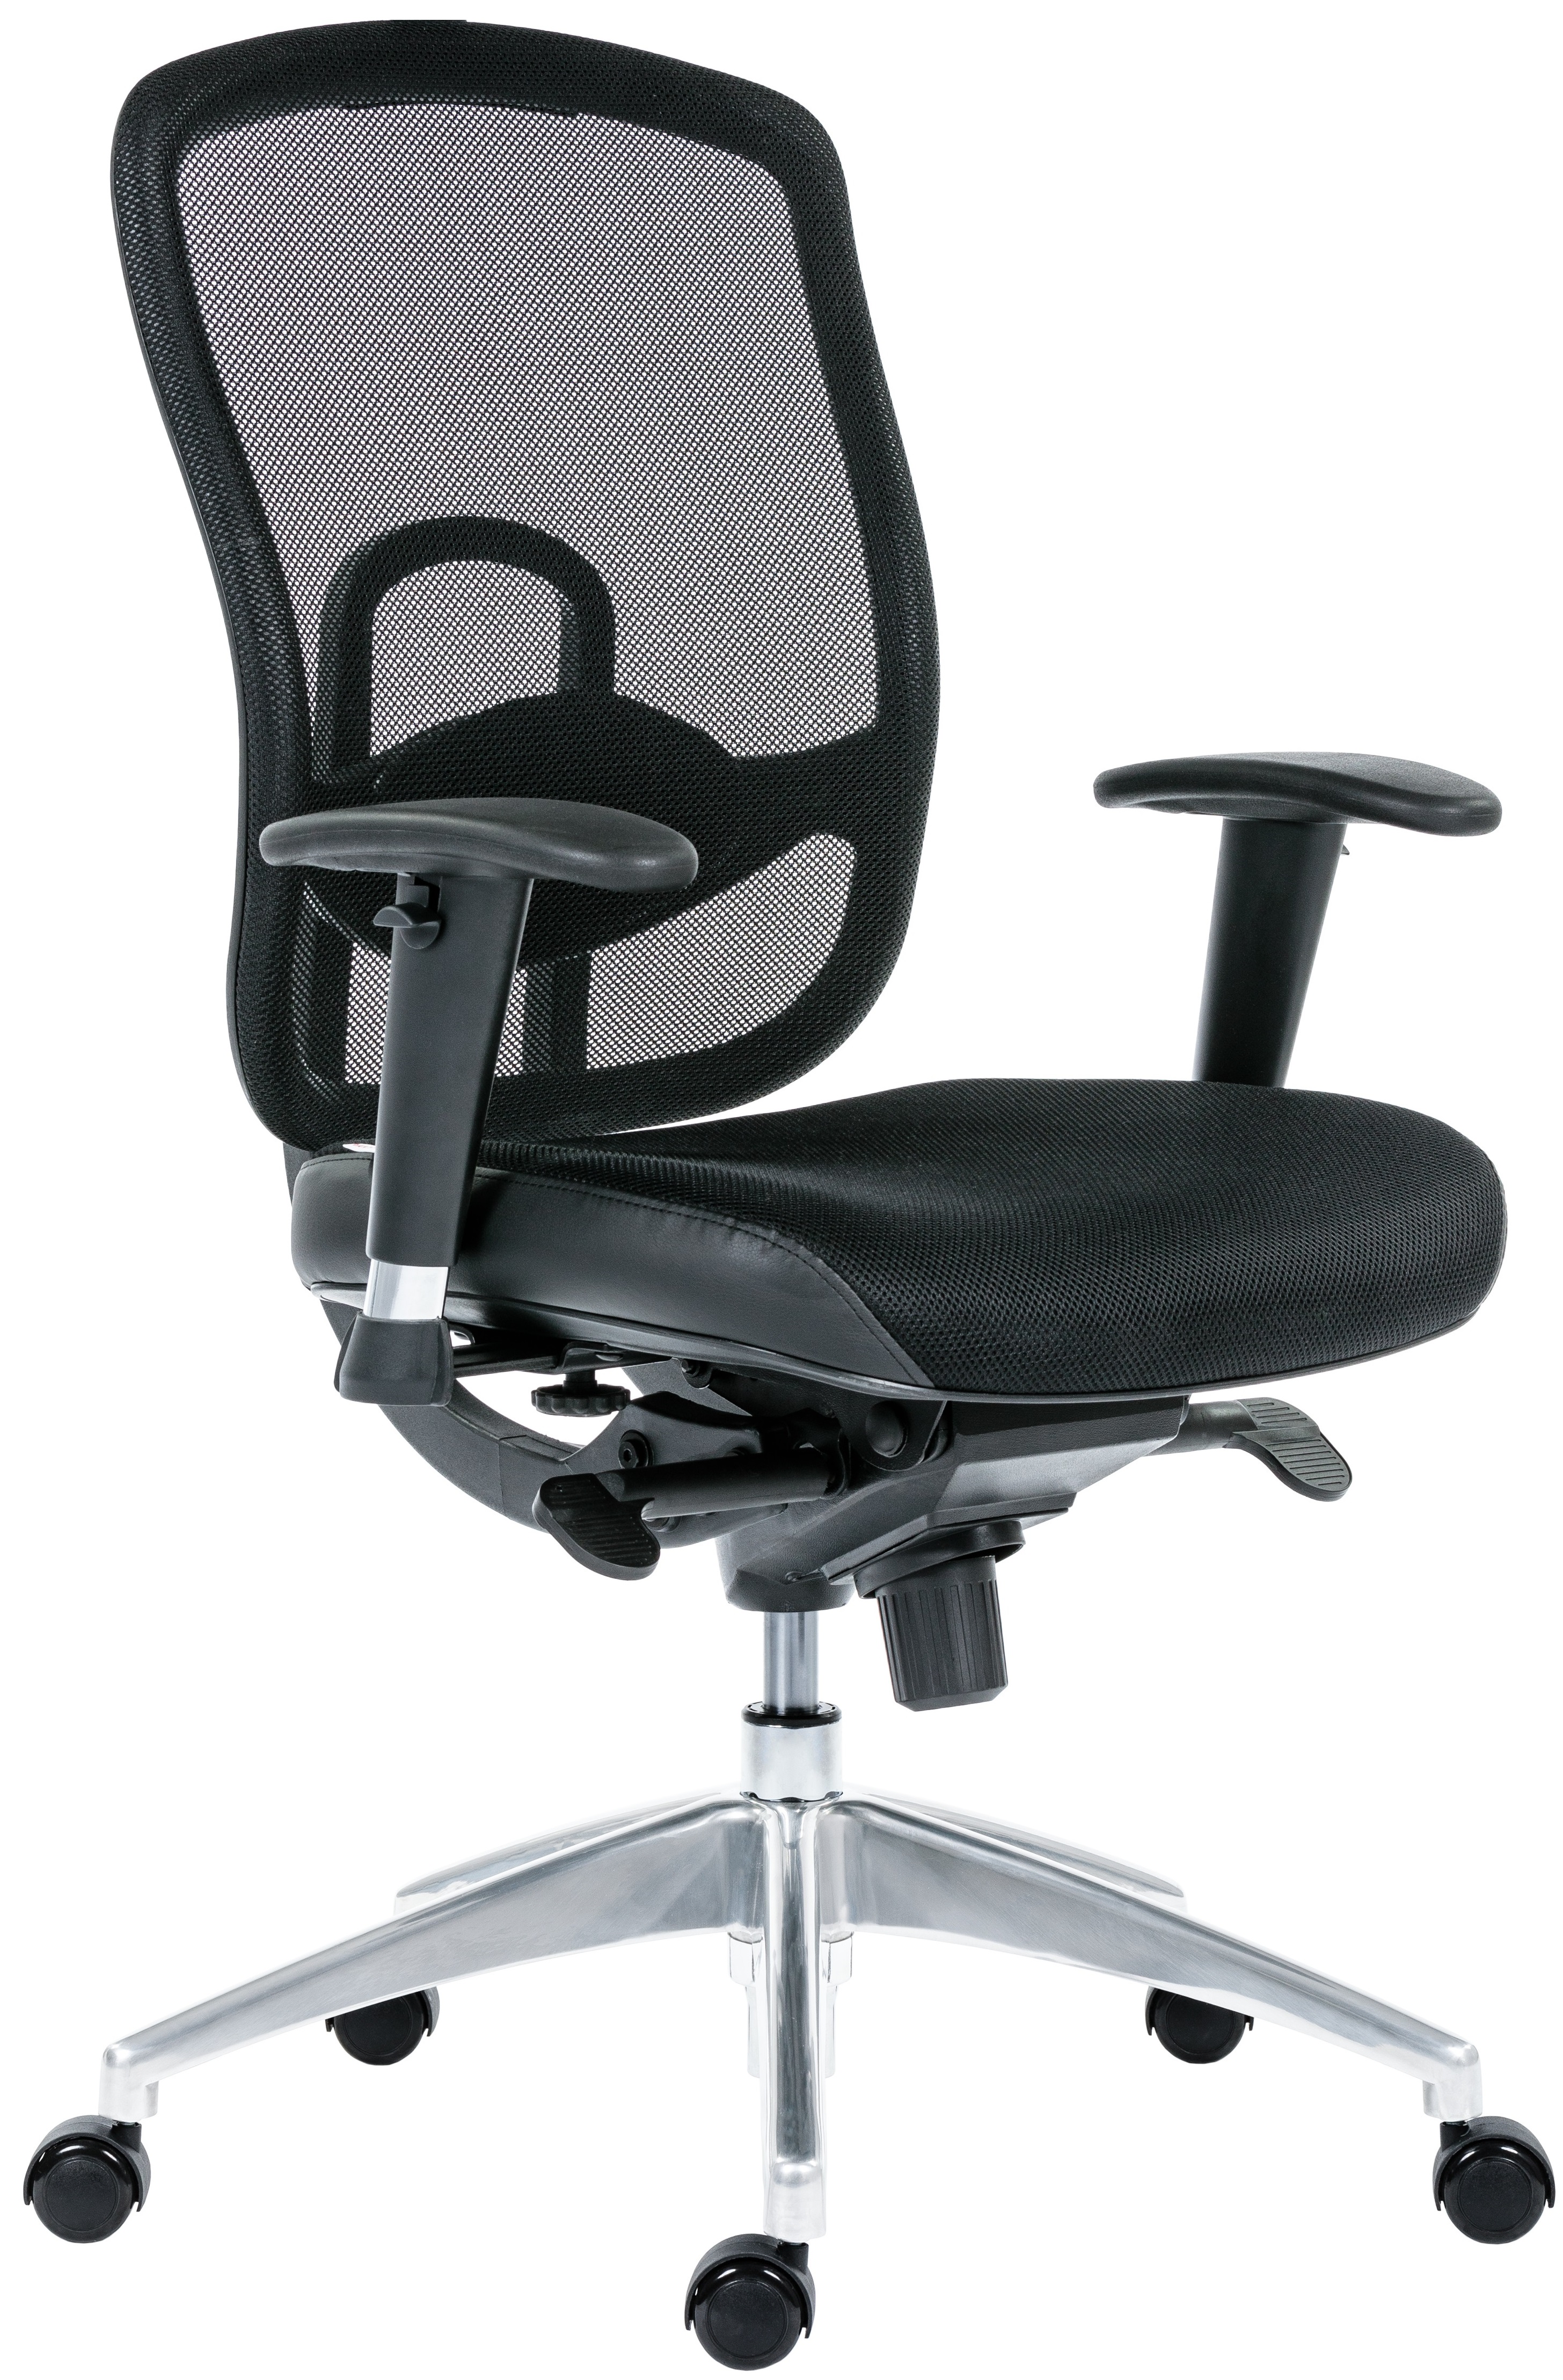 ANTARES kancelářská židle OKLAHOMA černá bez podhlavníku